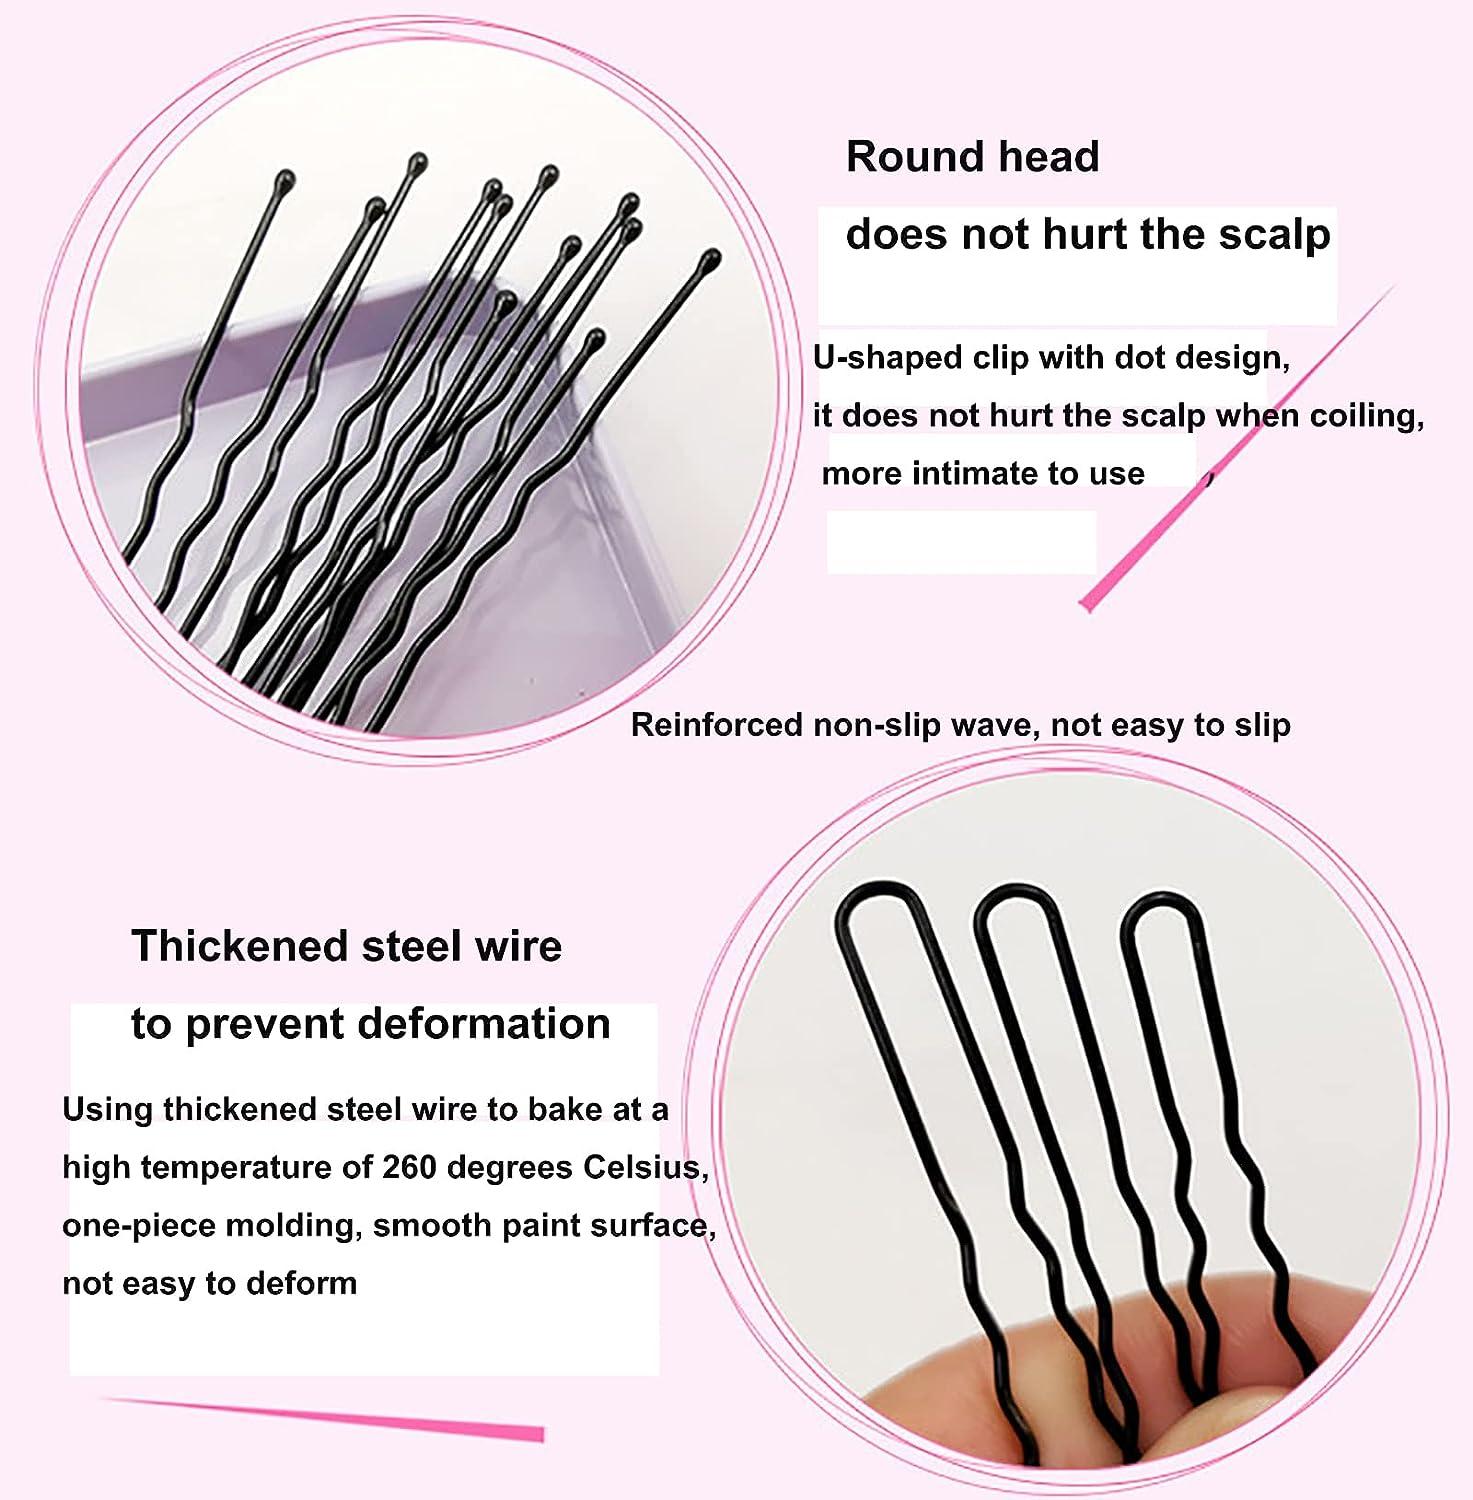 U Shaped Hair Pins, 100pcs Buns Waved U-shaped Hair Pins For Updos